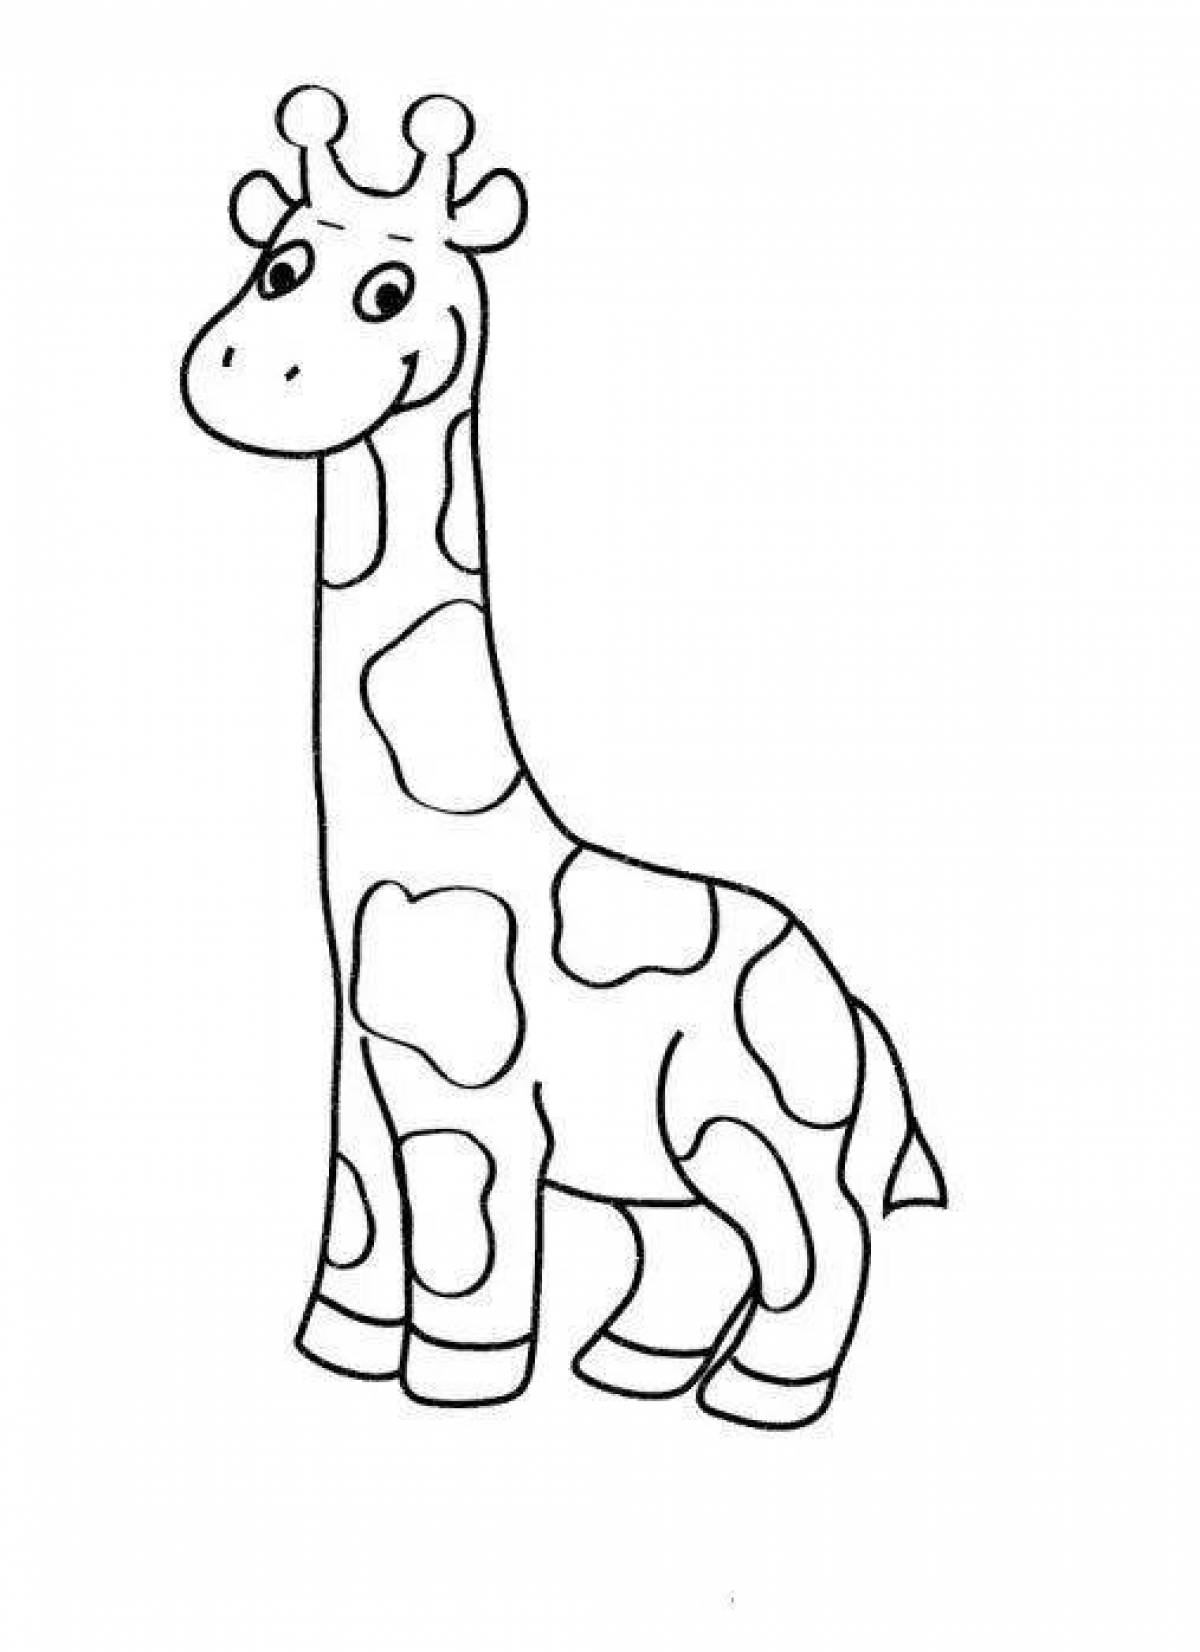 Rampant giraffe coloring book for kids